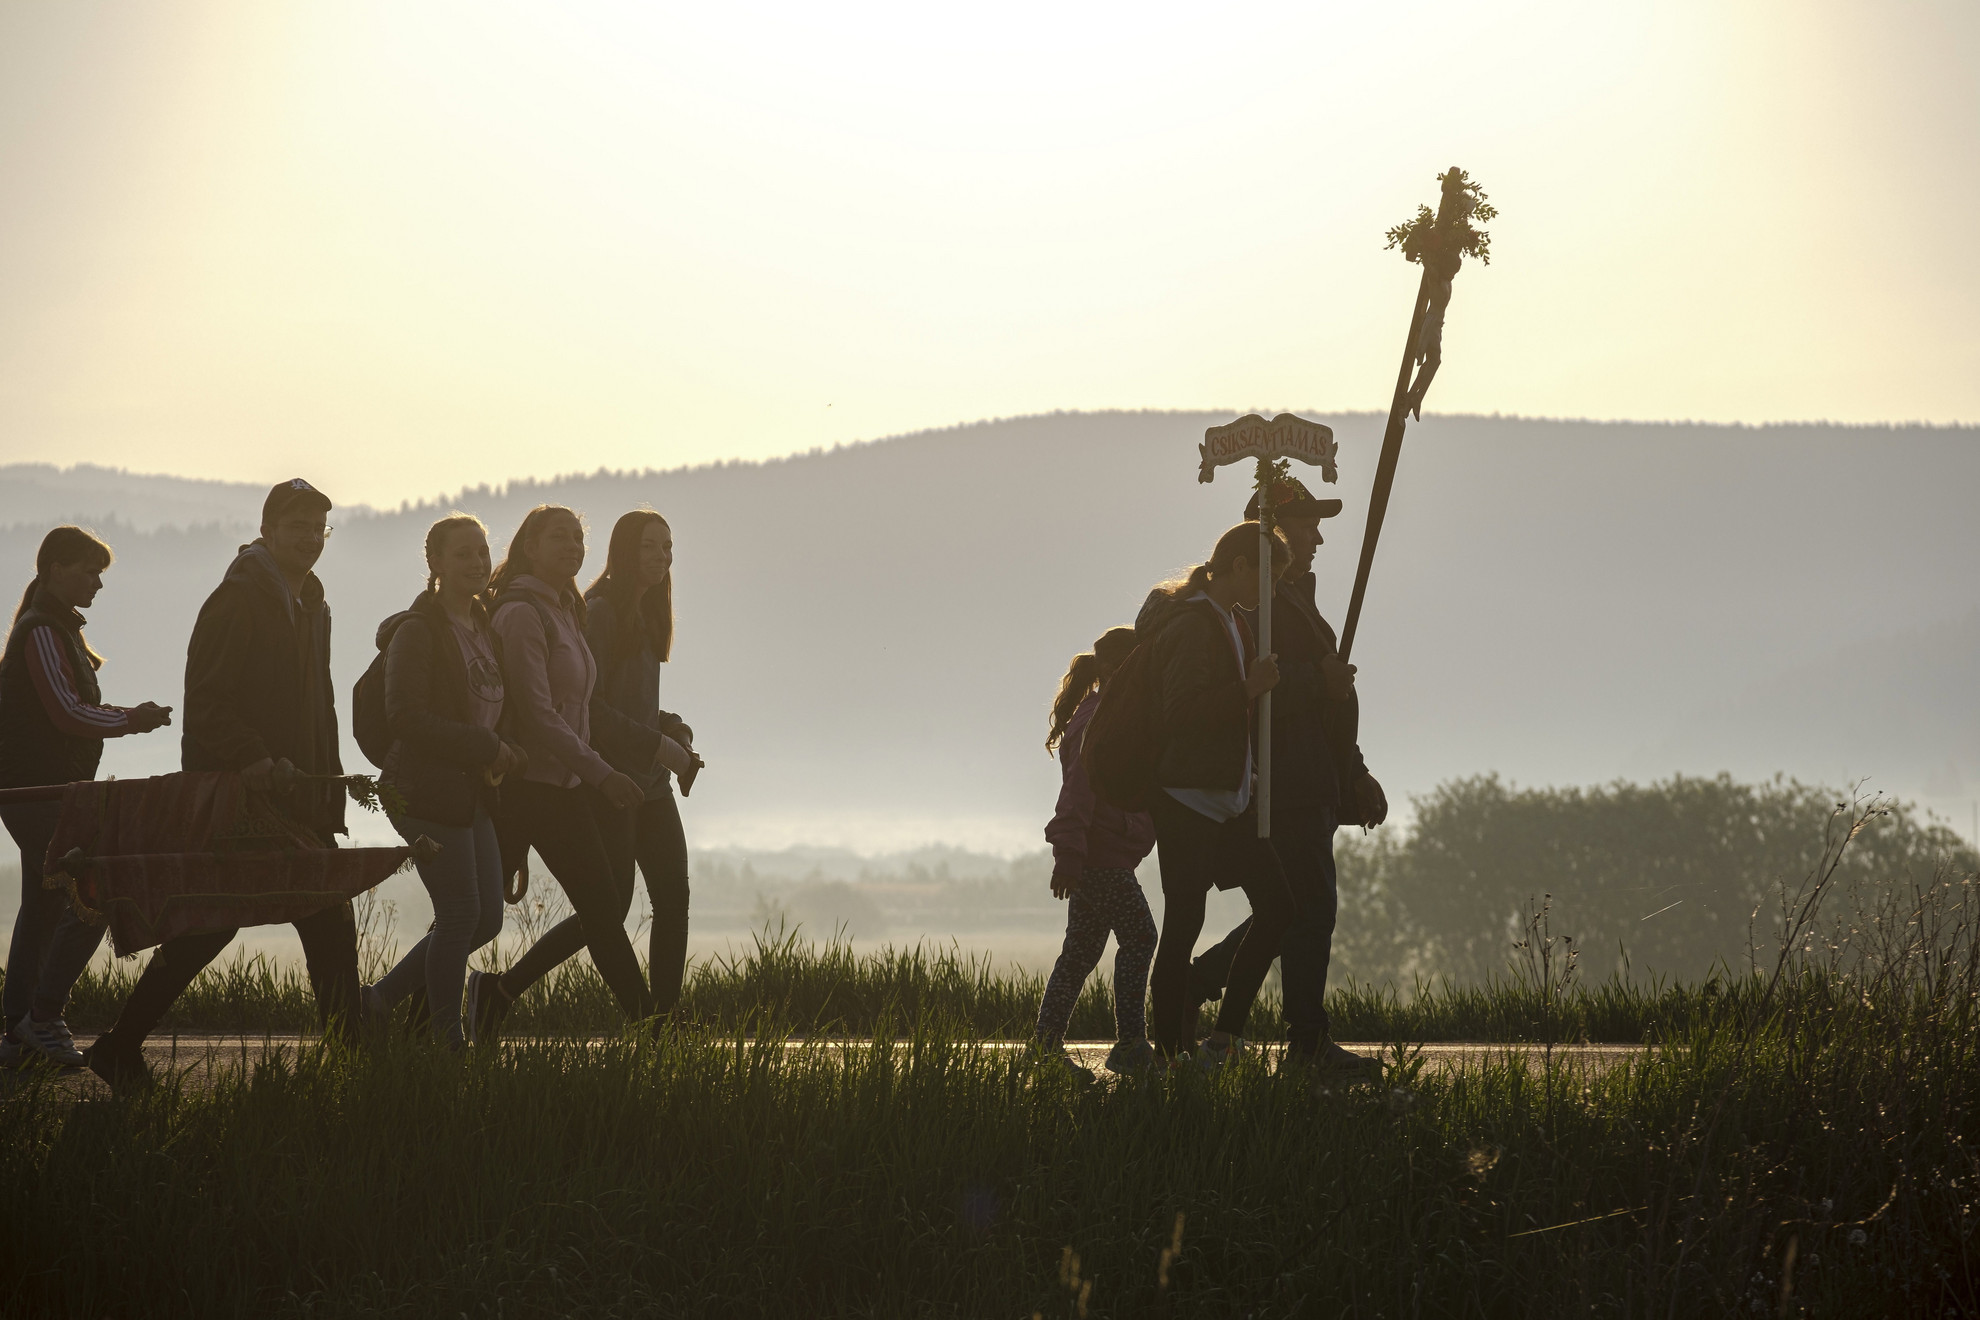 A csíksomlyói búcsúra tartó csíkkszenttamási keresztalja gyalogos zarándoklata Csíkrákos határában 2022. június 4-én reggel